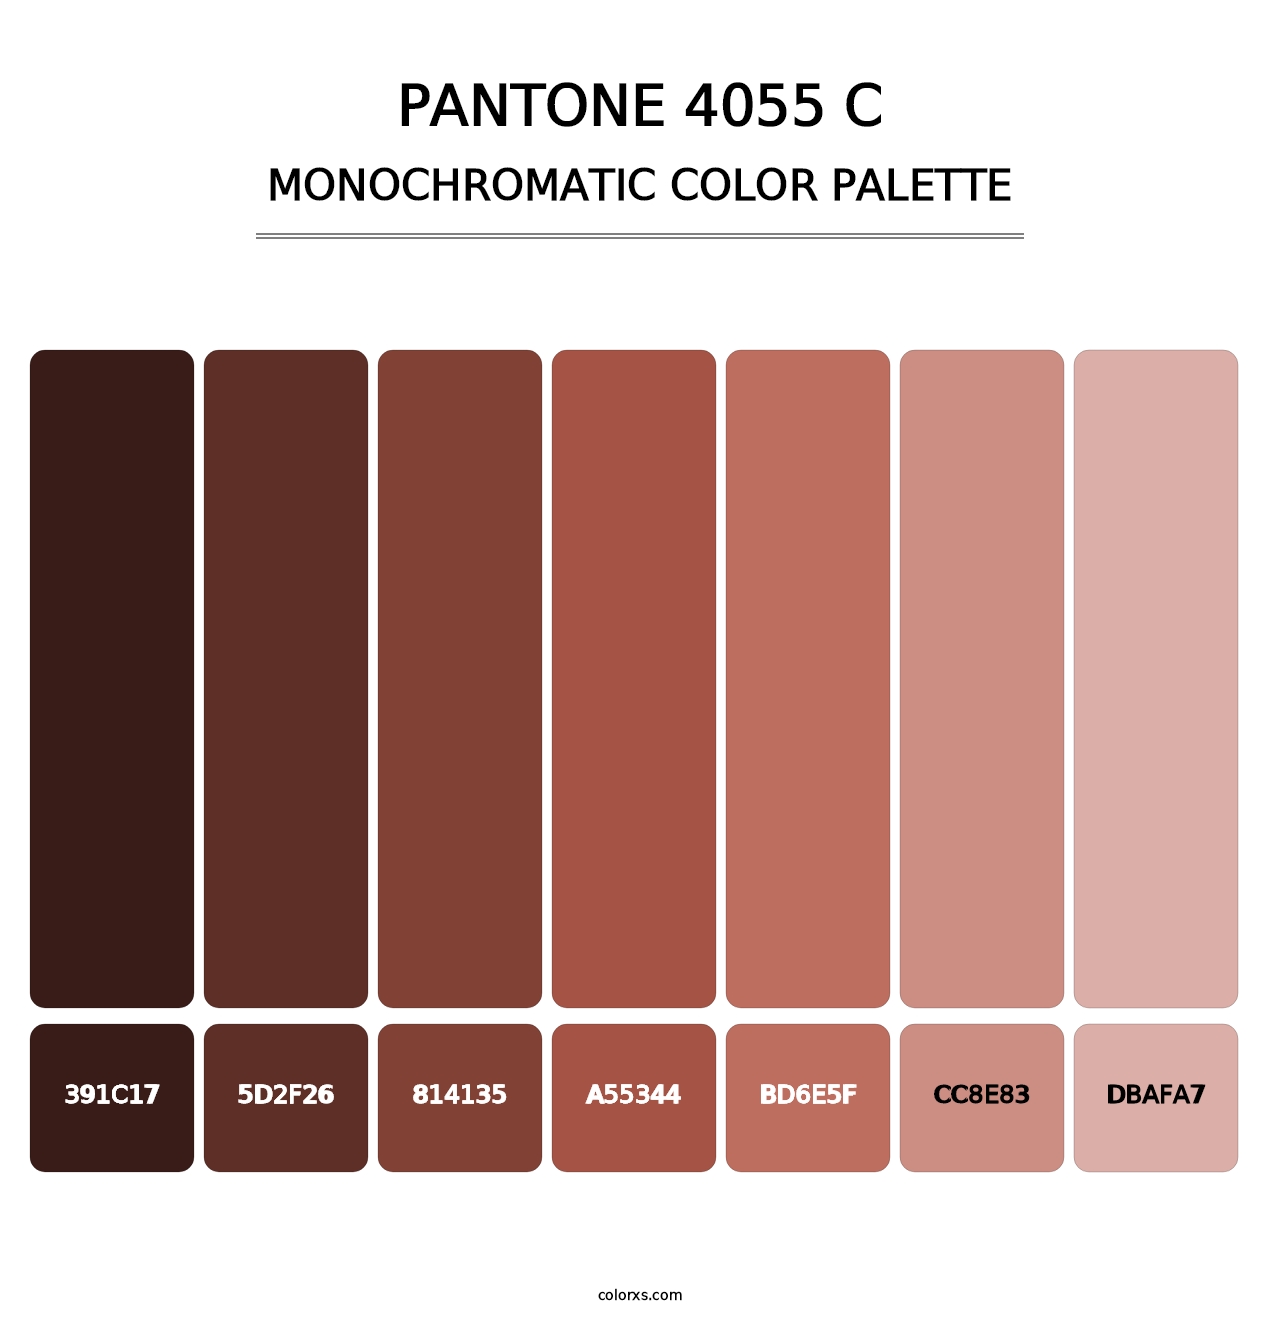 PANTONE 4055 C - Monochromatic Color Palette